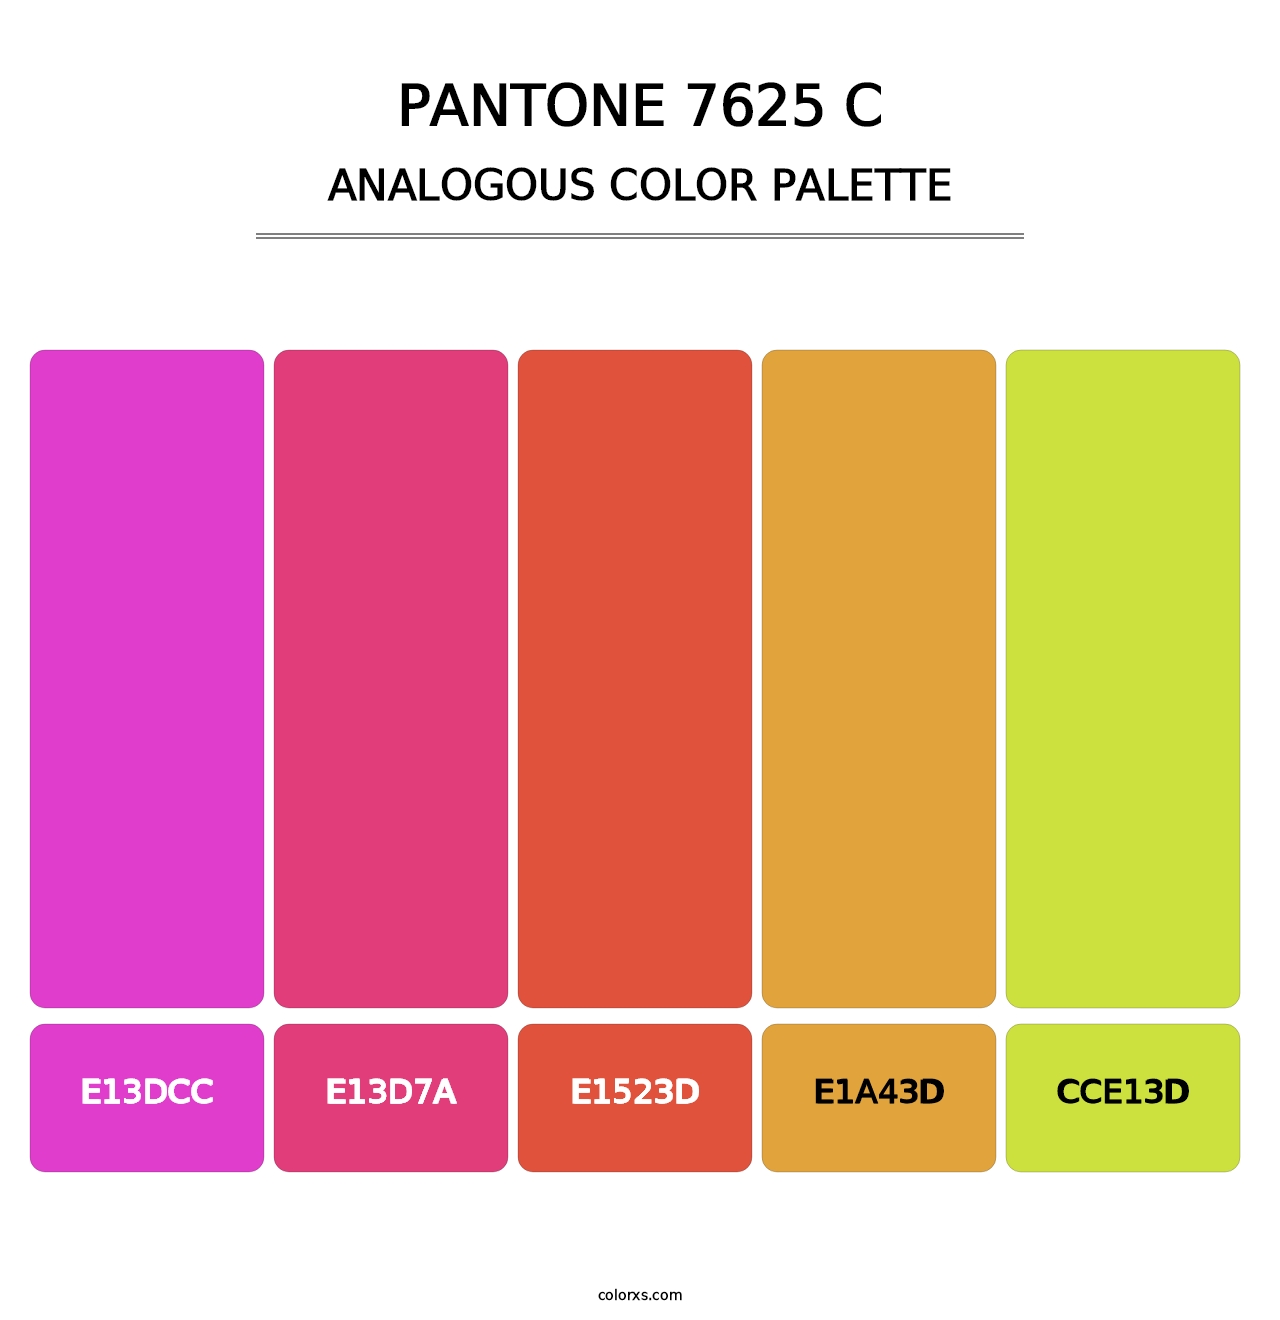 PANTONE 7625 C - Analogous Color Palette